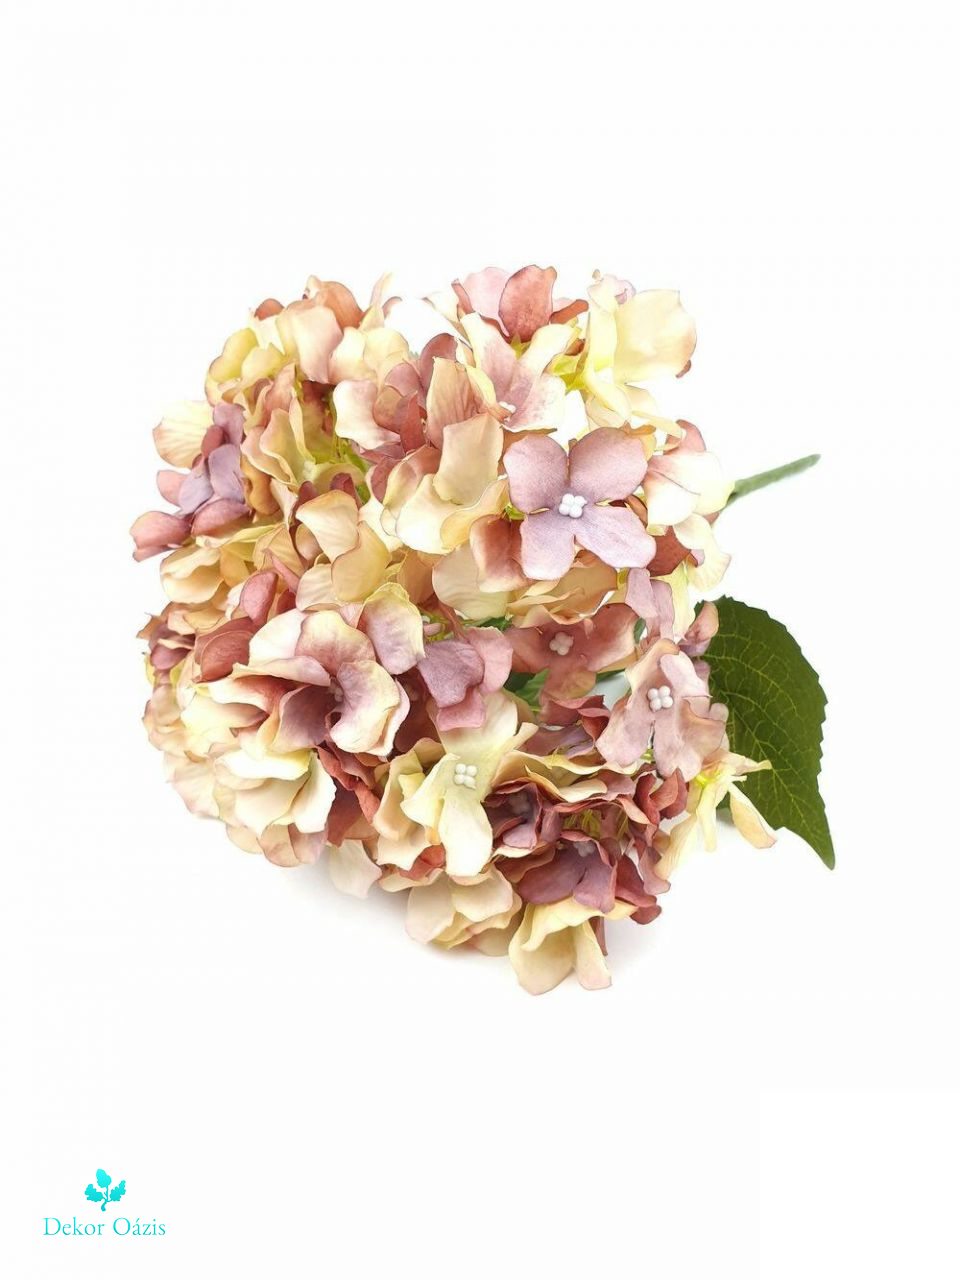 5 fejes hortenzia csokor 43 cm - Több színben